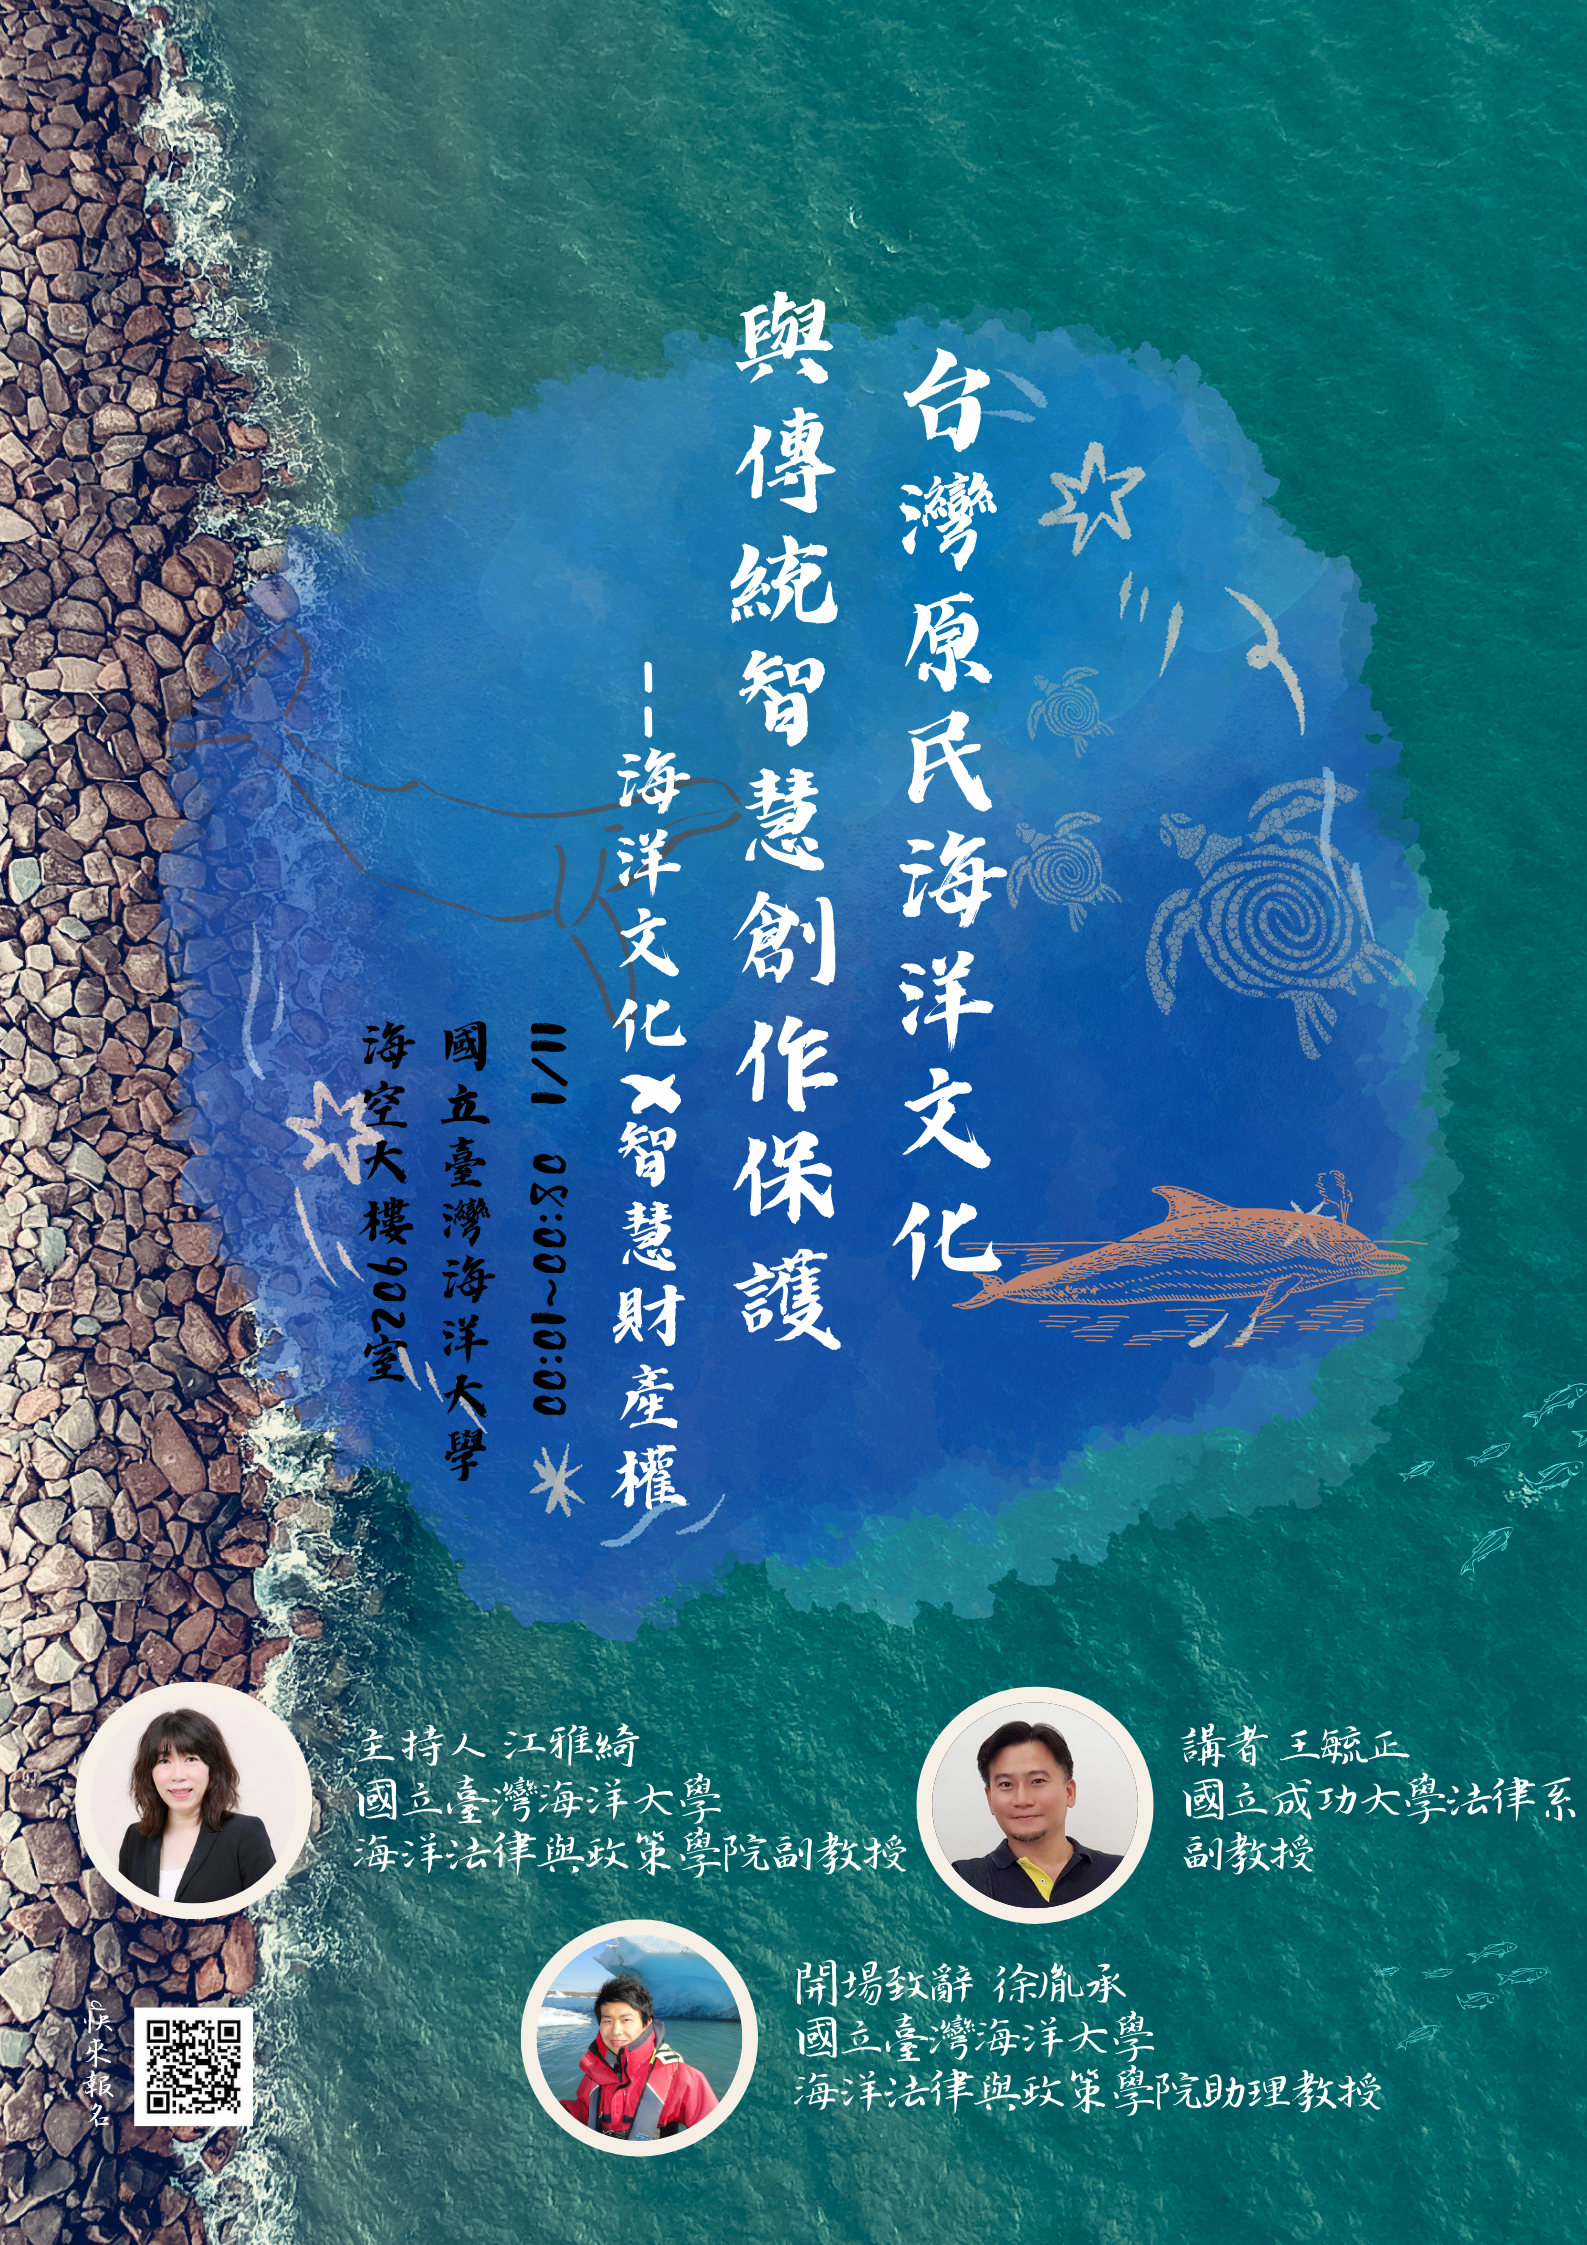 2022/11/01-海洋文化x 智慧財產權講座(台灣原民海洋文化與傳統智慧創作保護)